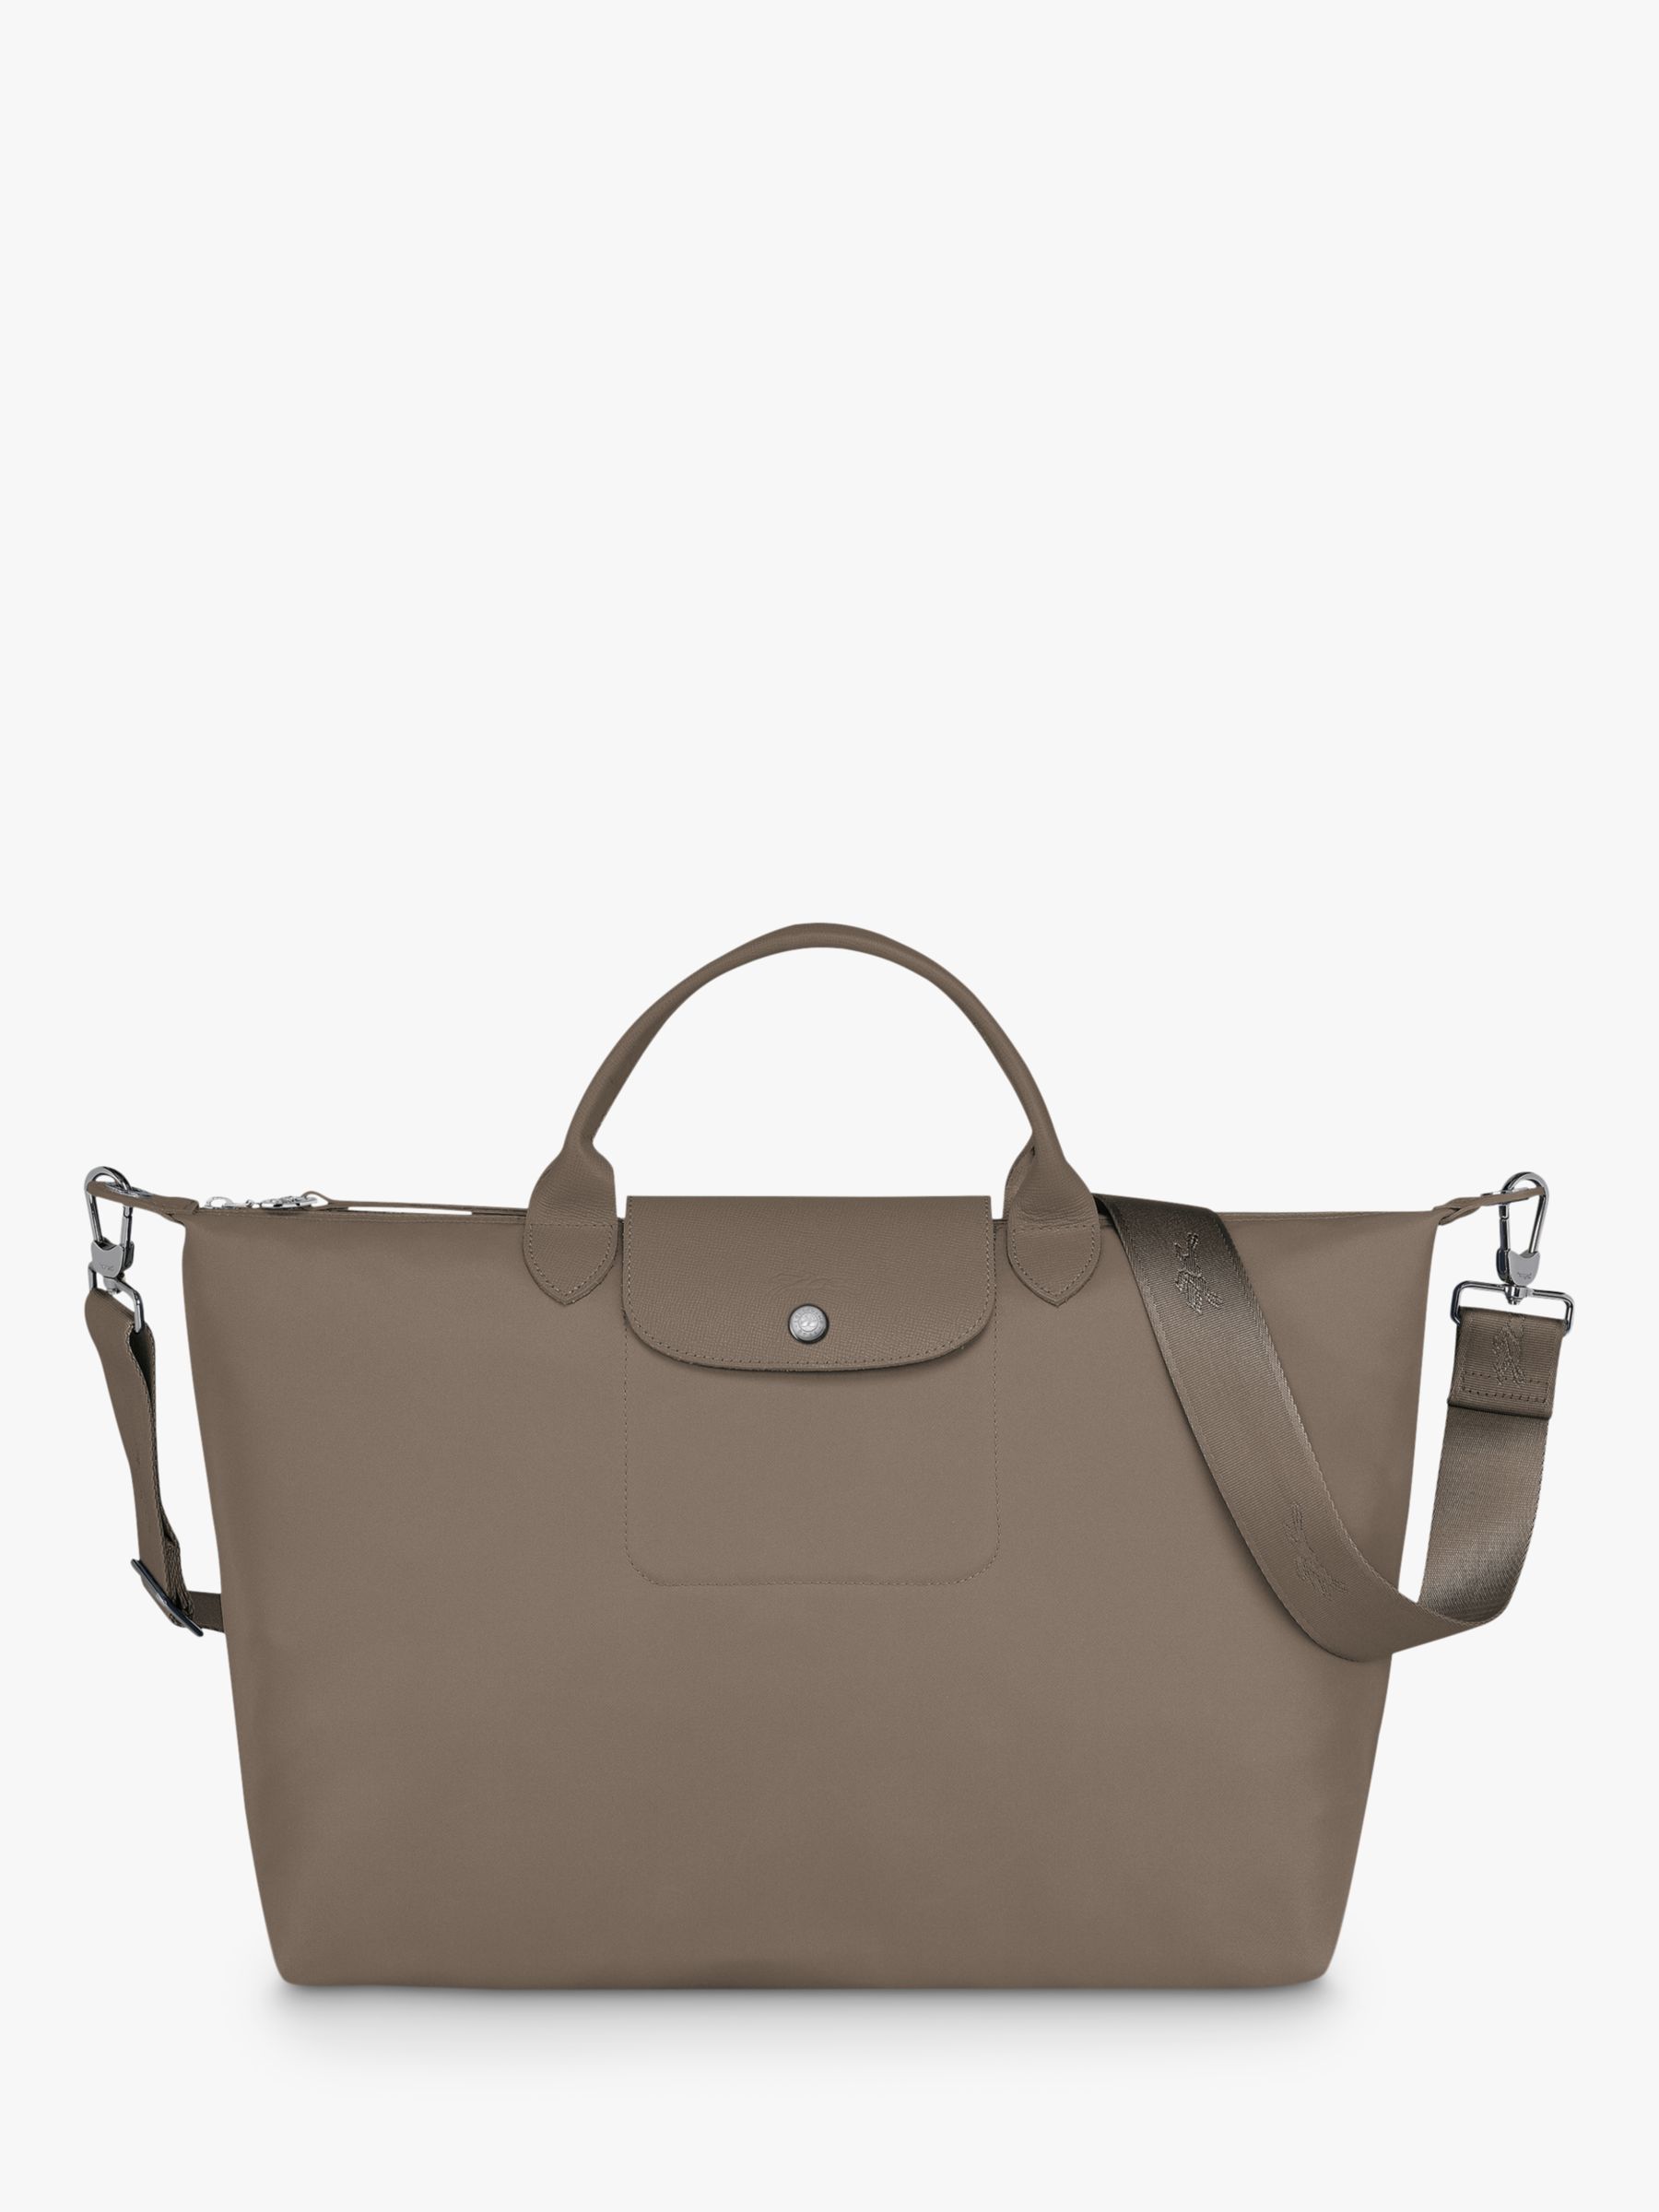 Longchamp Le Pliage Néo XL Top Handle Bag